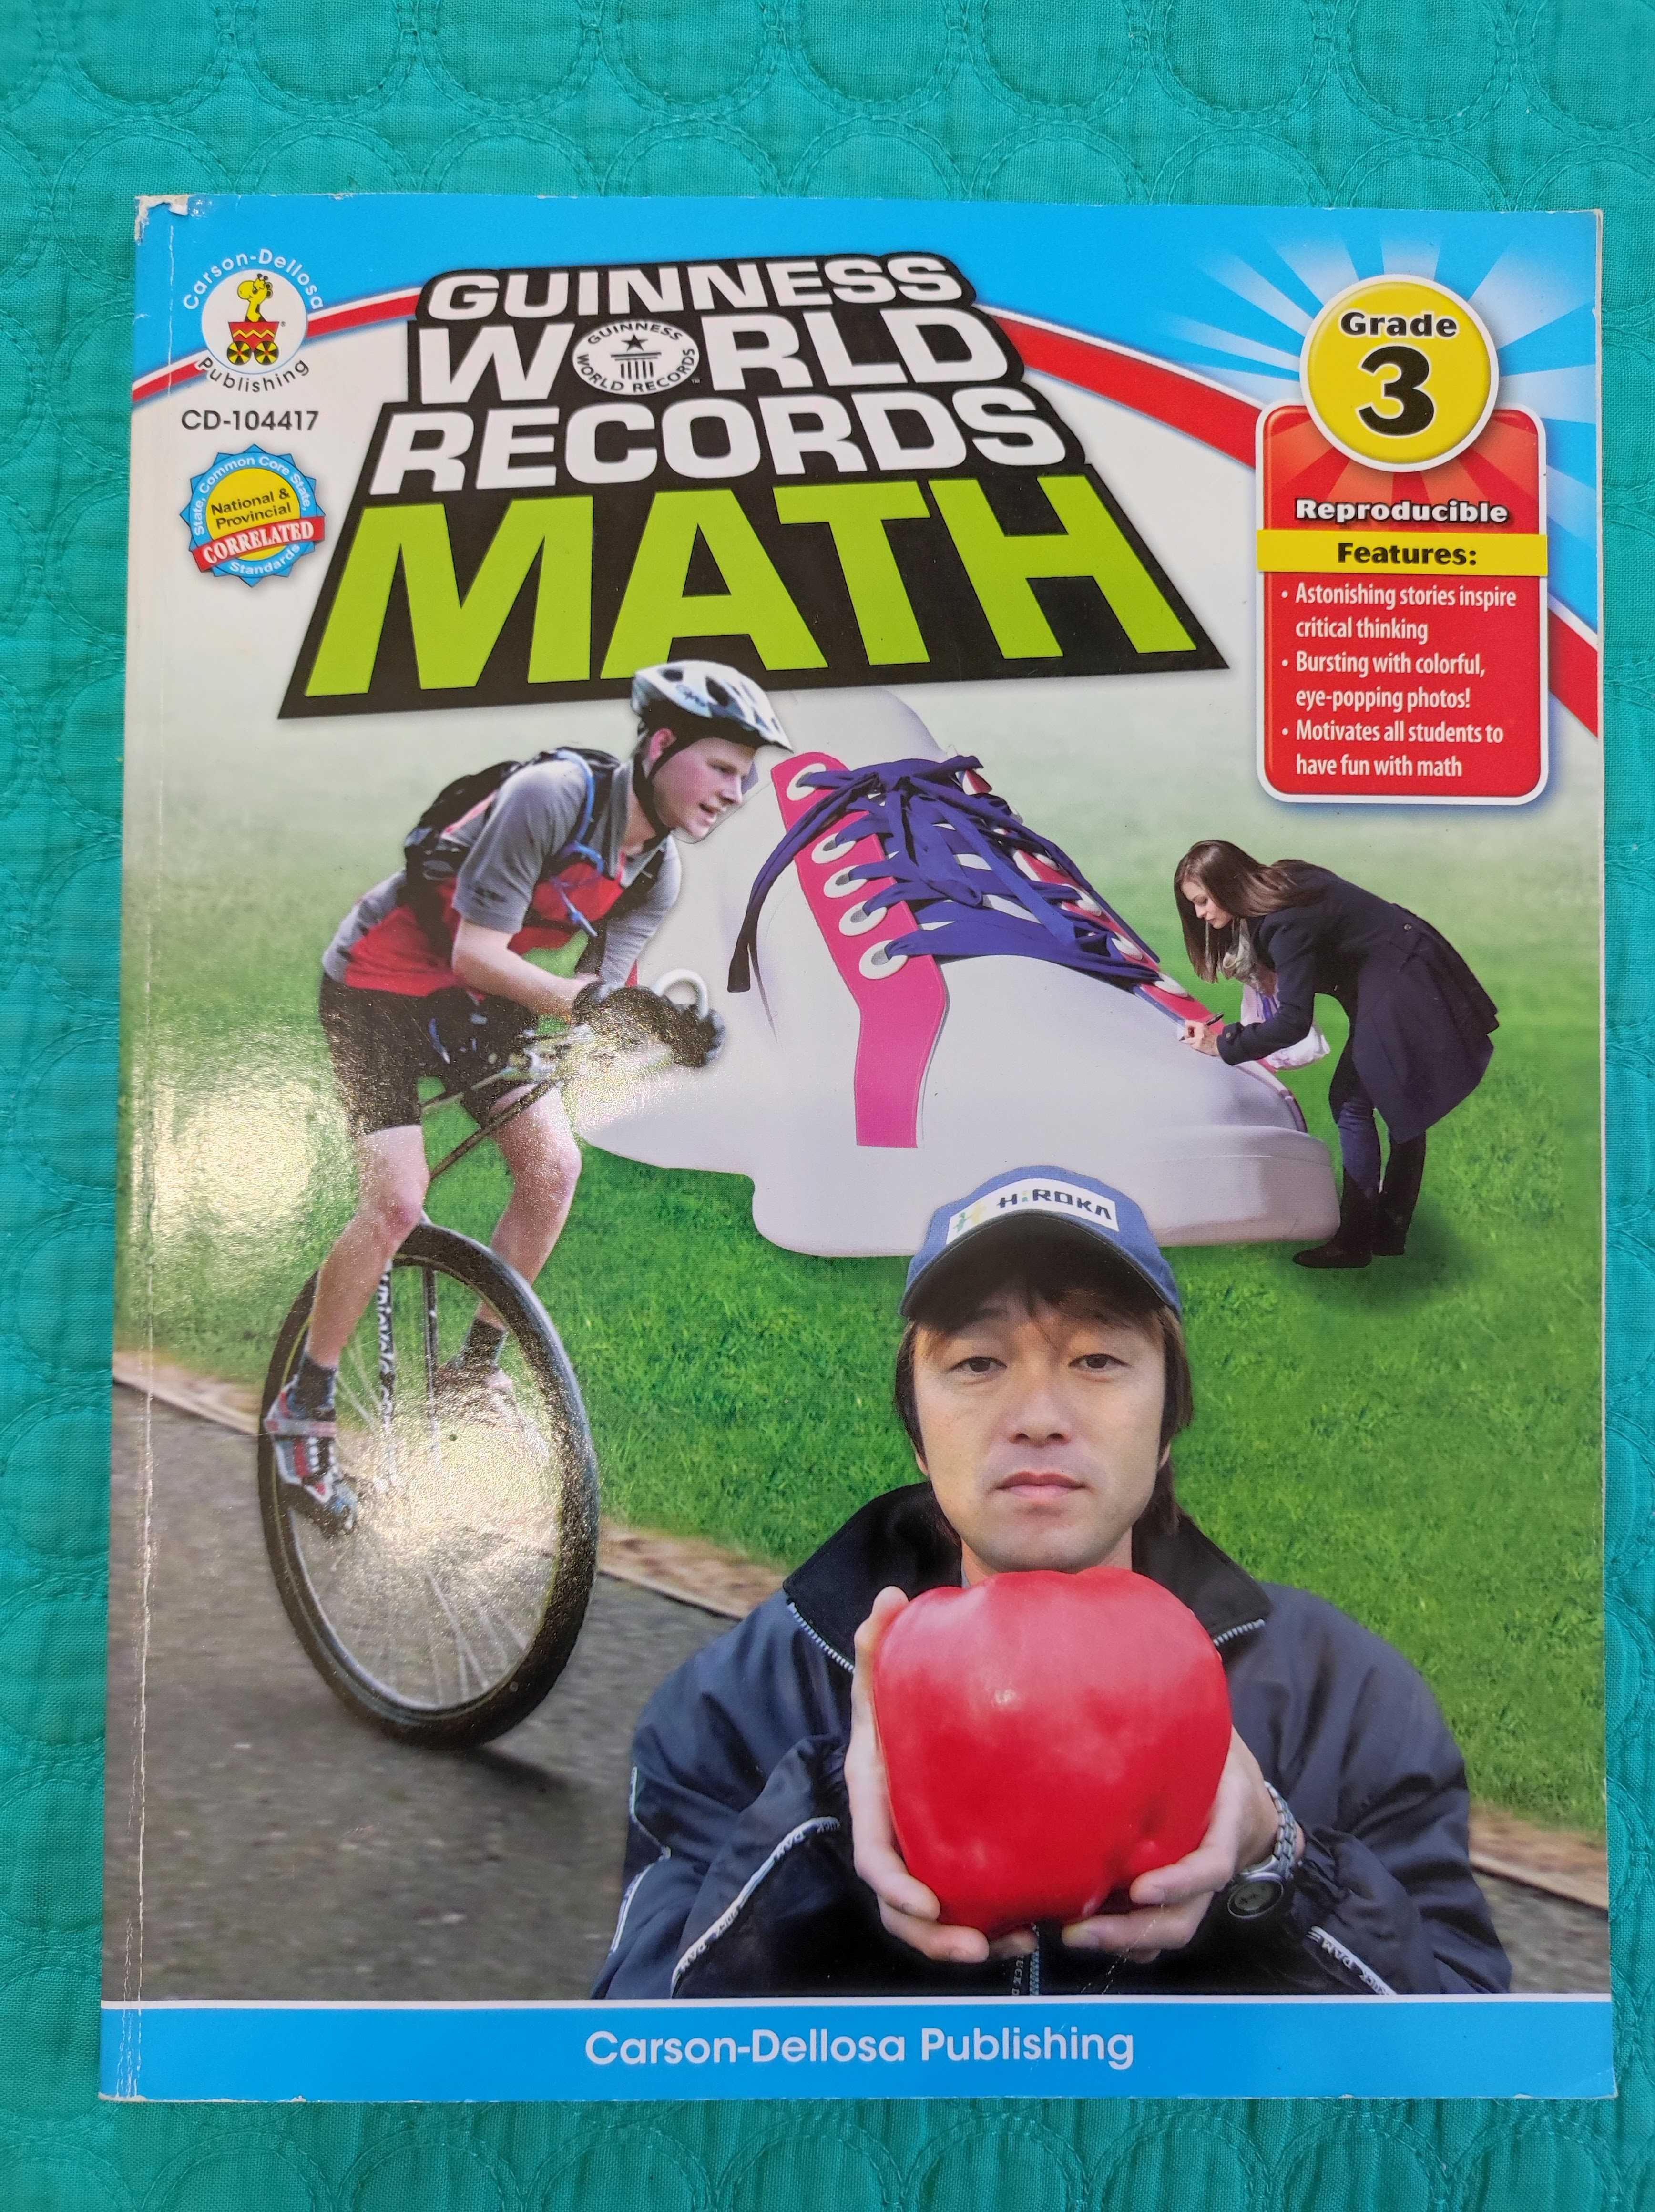 Livro "Guinness World Records Math" (portes incluídos)